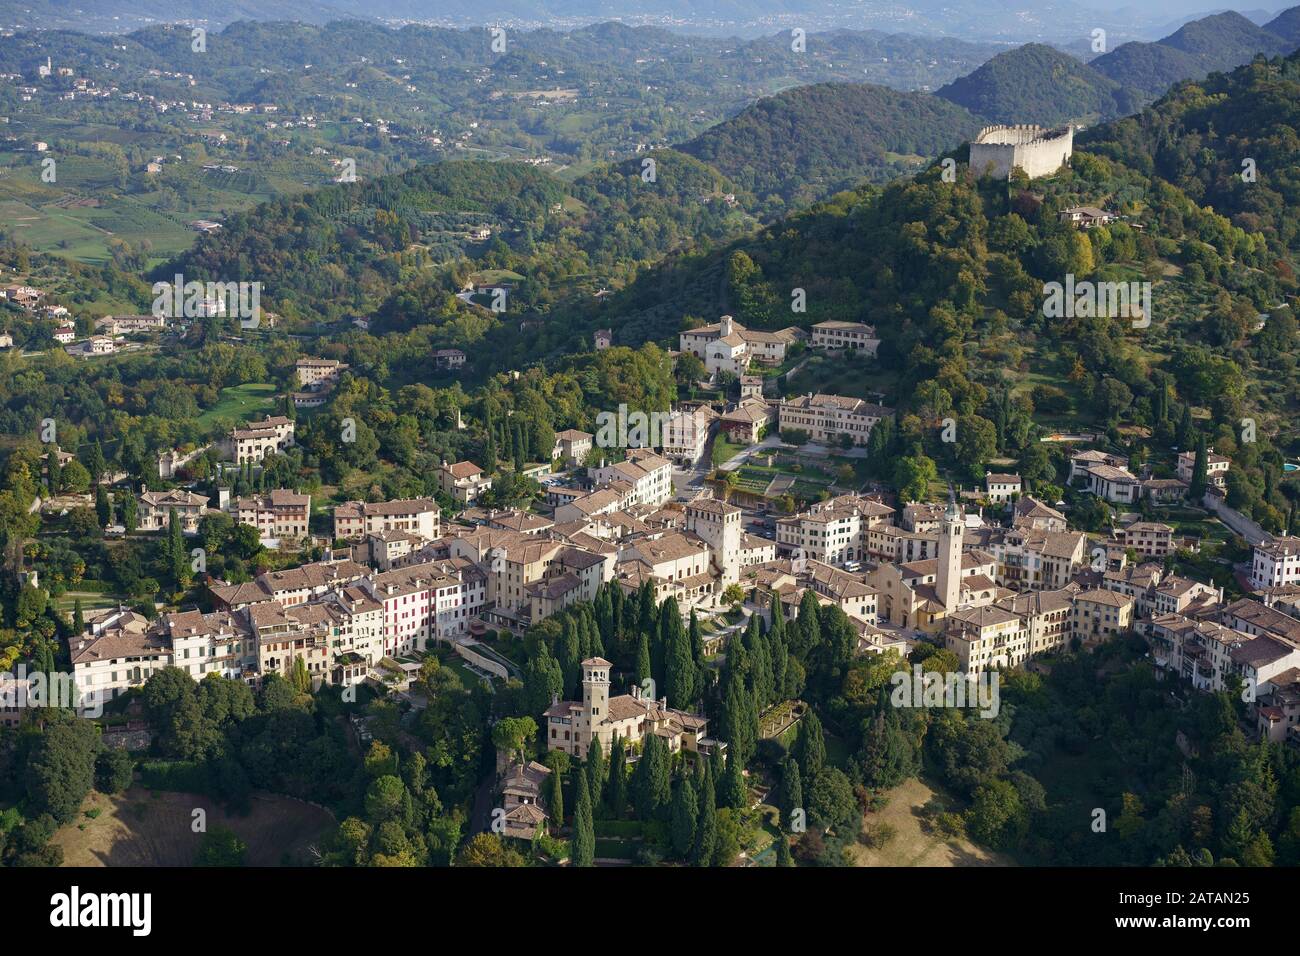 VUE AÉRIENNE.Ville pittoresque sur des collines verdoyantes.Asolo, Vénétie, Italie. Banque D'Images